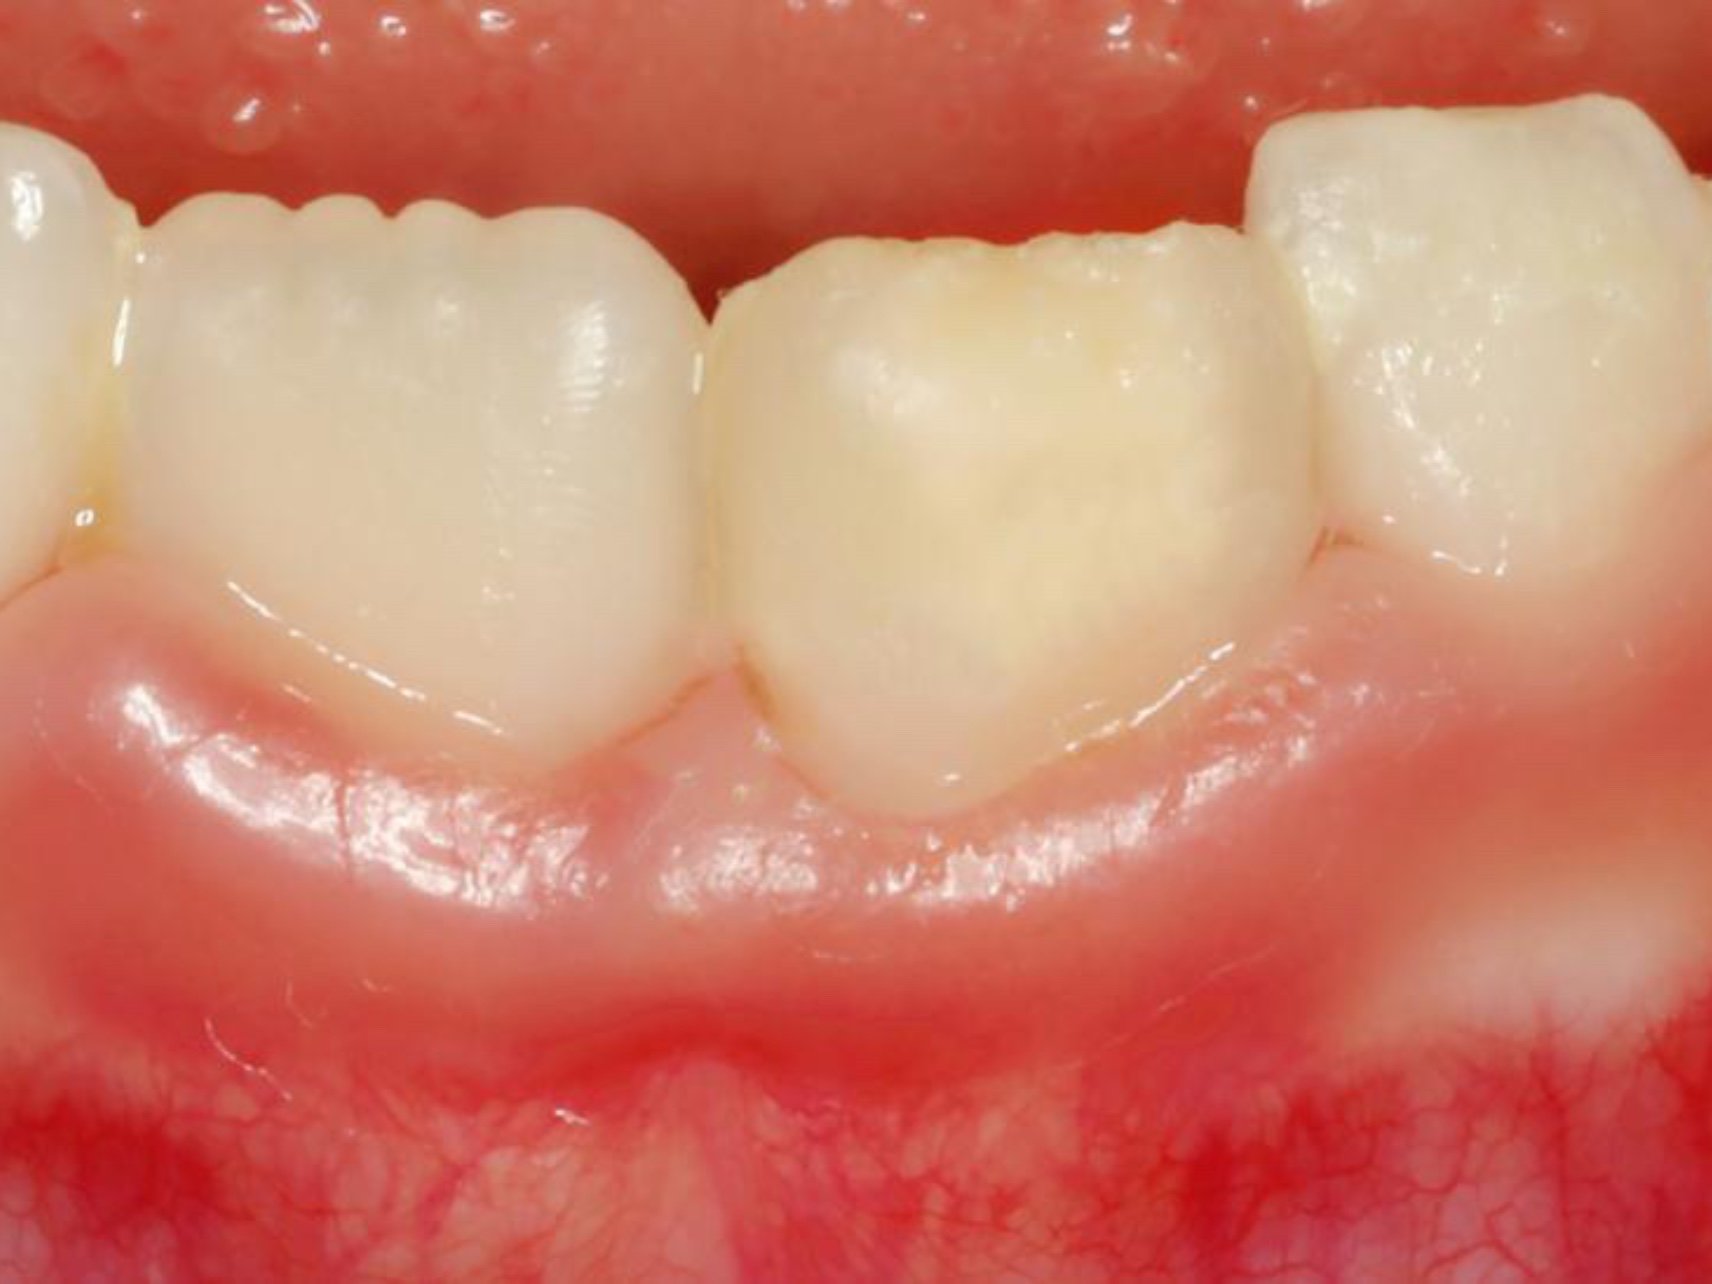 常规复查,妈妈主诉新长的恒牙黄黄的,经医生检查发现是牙釉质发育不全